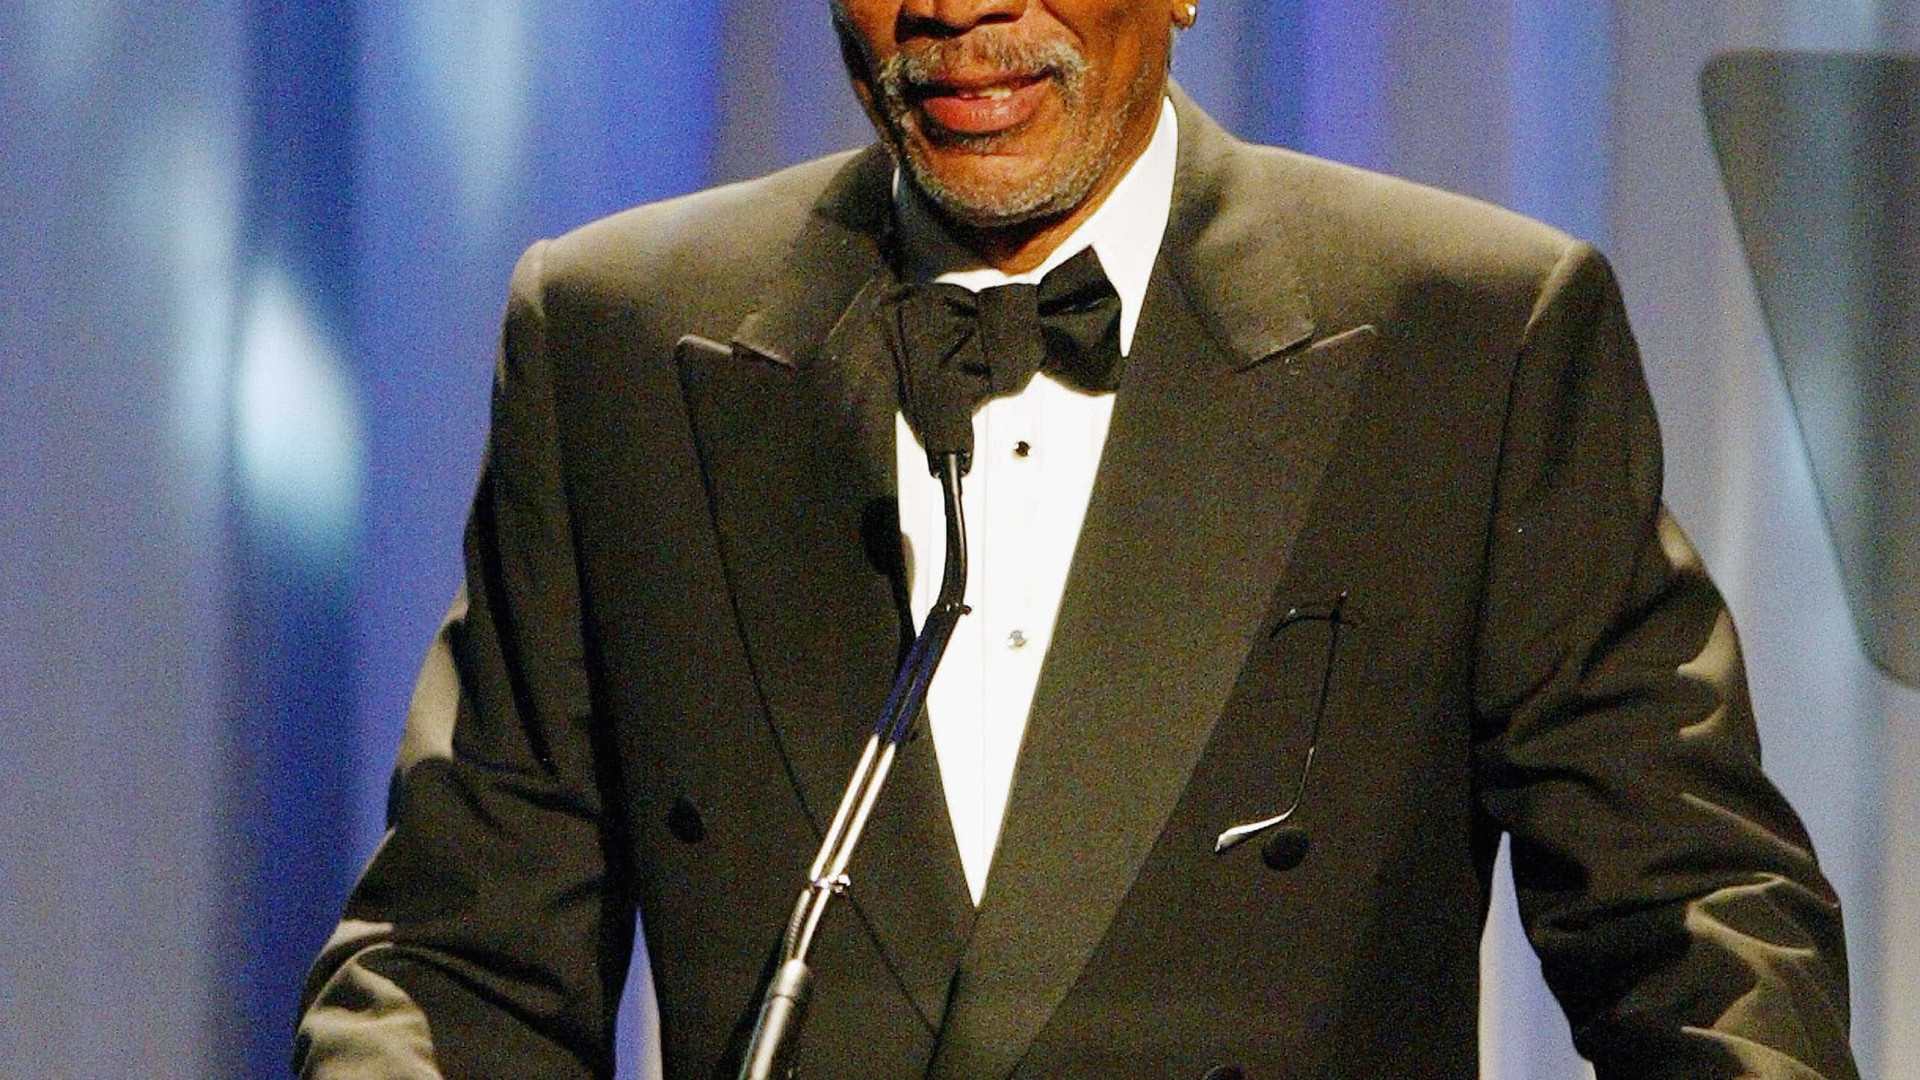 'Estou devastado', diz Morgan Freeman sobre acusaÃ§Ãµes de assÃ©dio sexual